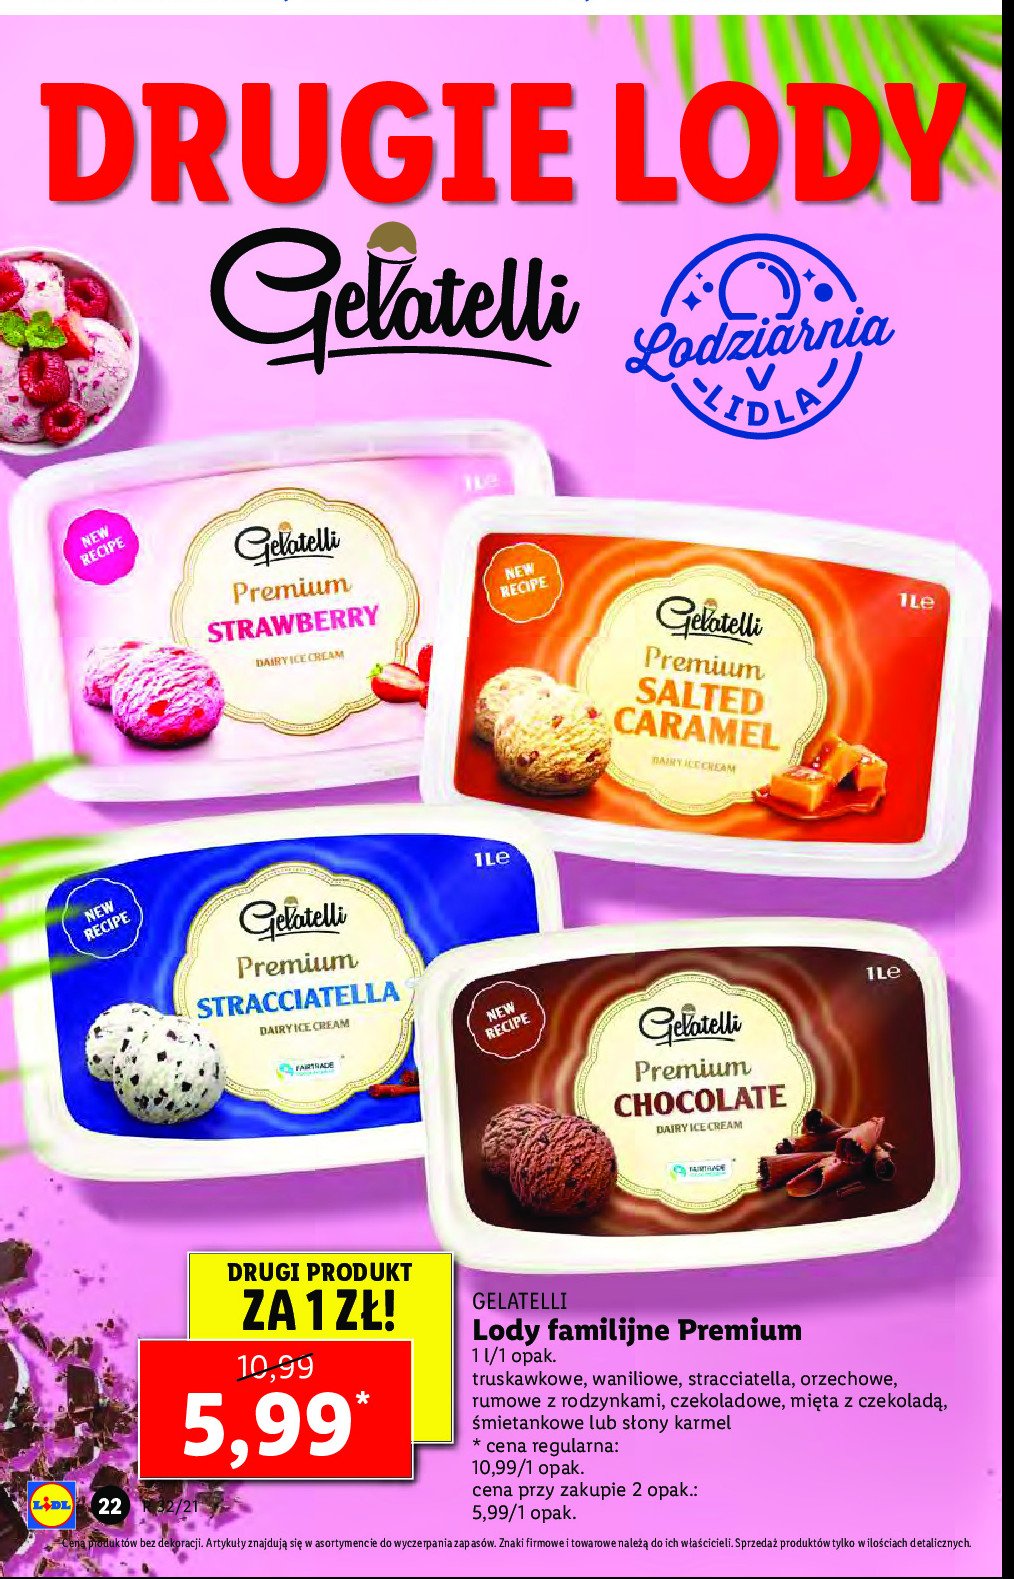 Lody premium dairy Gelatelli promocja